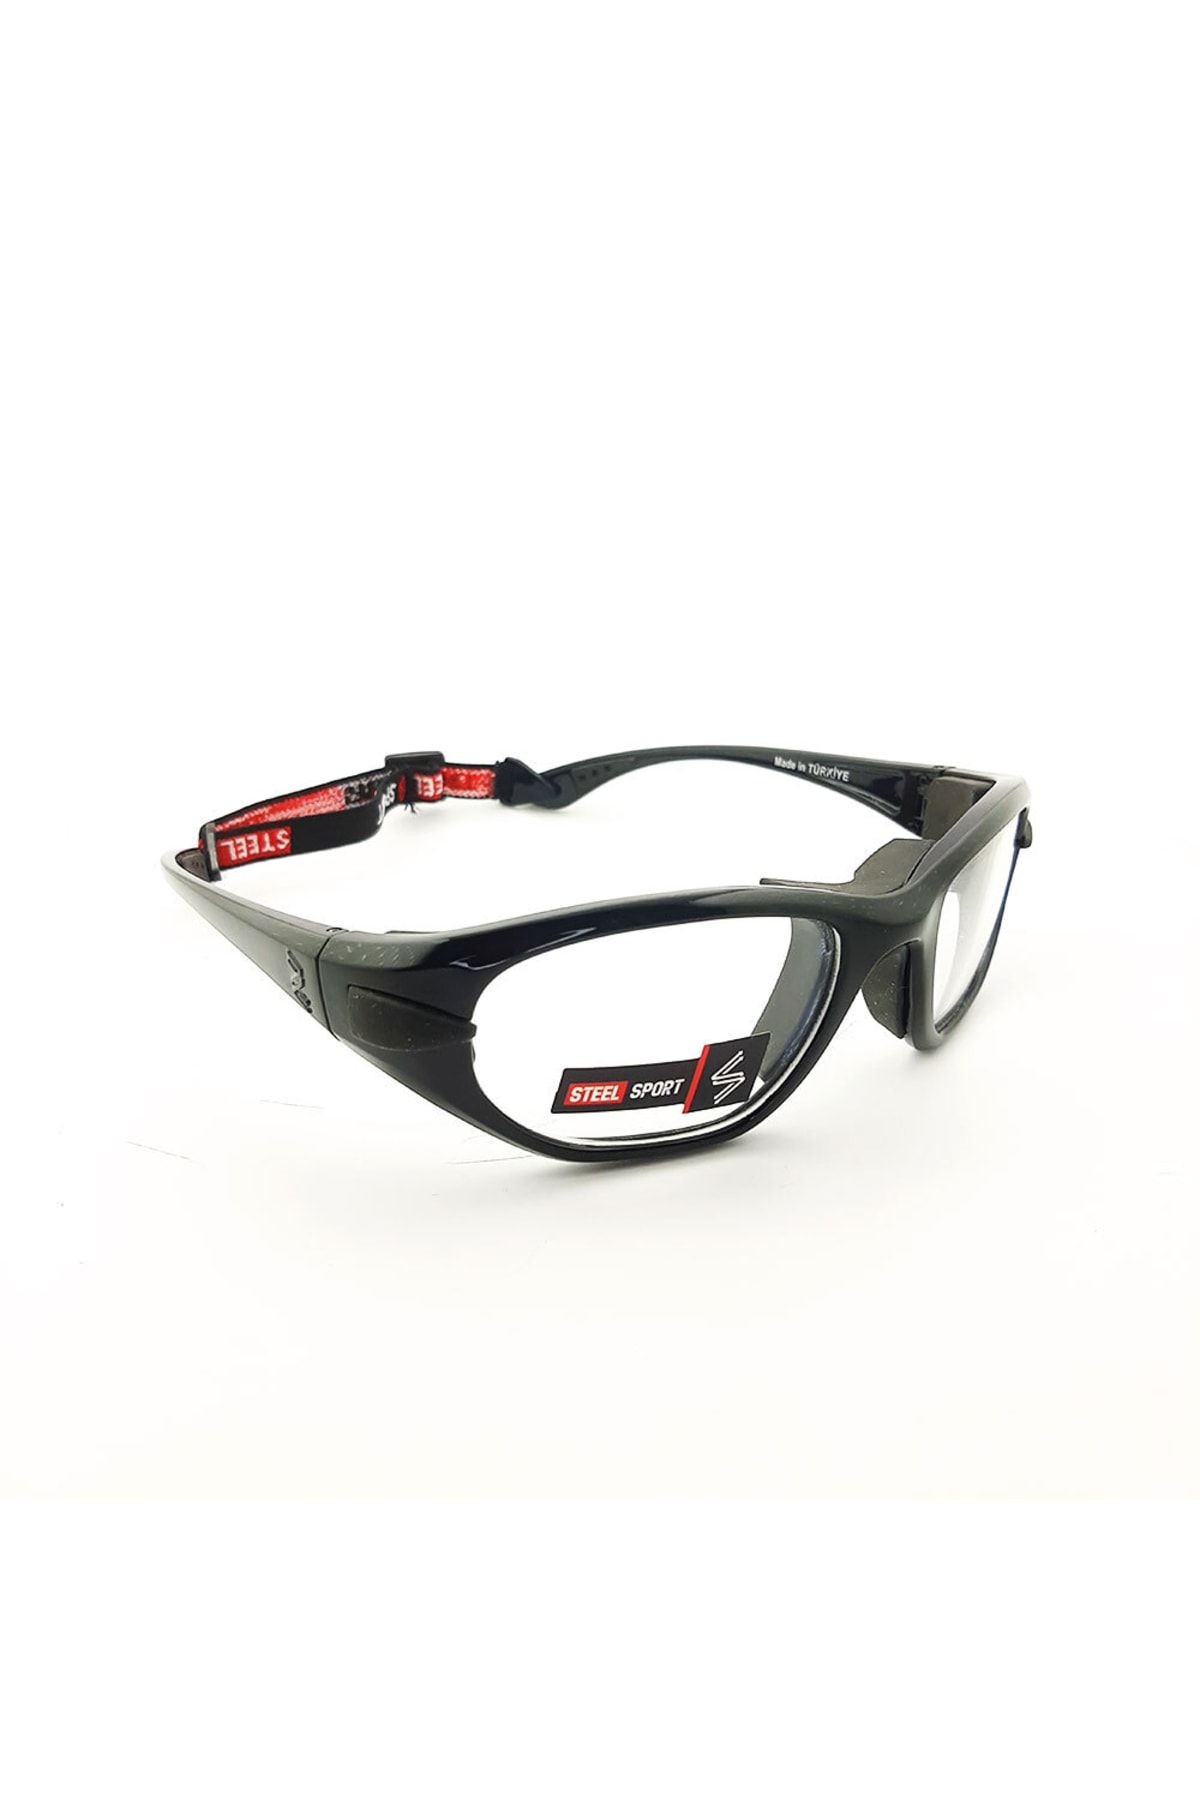 Steel Sport Maxima Ss-fl C11 Parlak Metalik Siyah [20+ Yaş ] Numaralı Olabilen Sporcu Gözlüğü